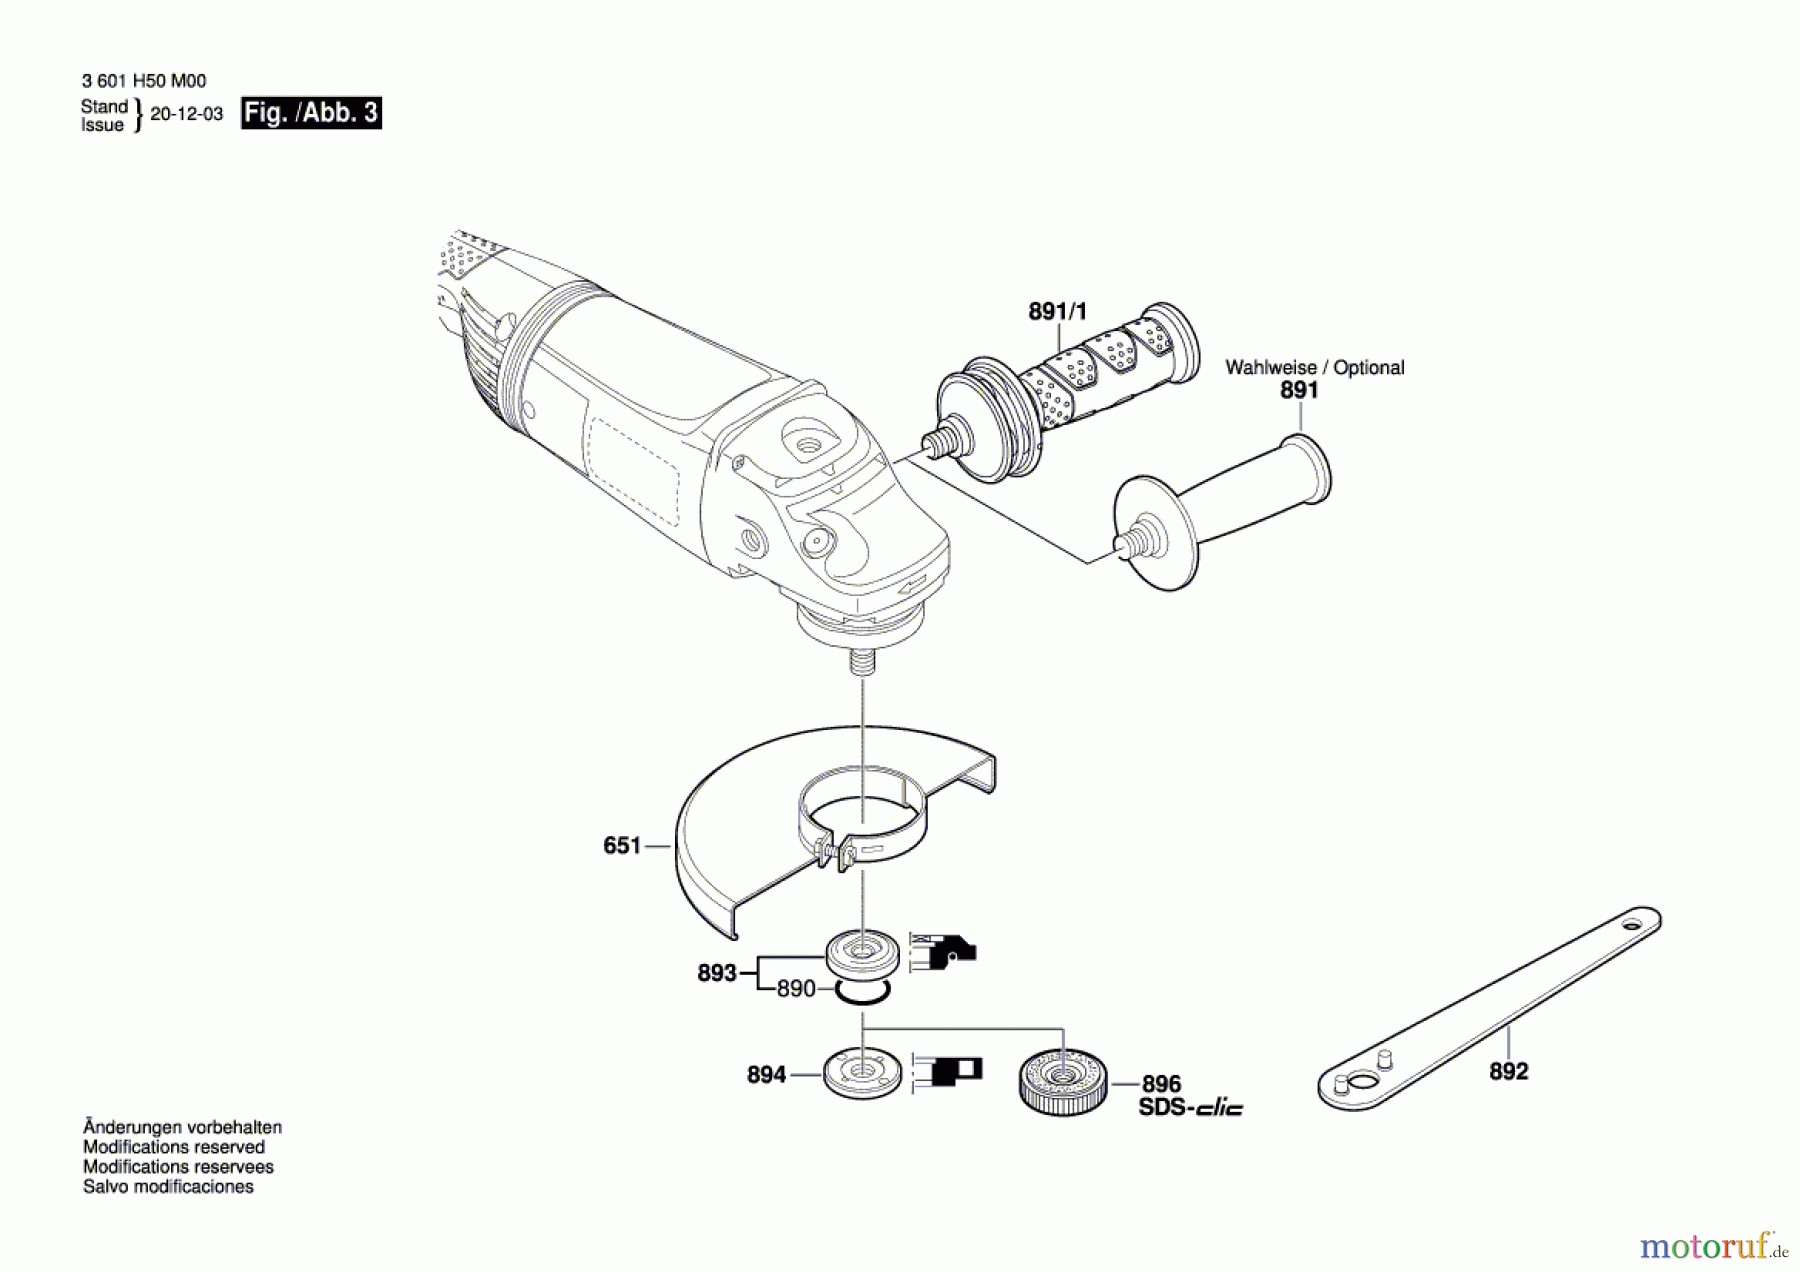  Bosch Werkzeug Winkelschleifer GWS 20-230JH Seite 3